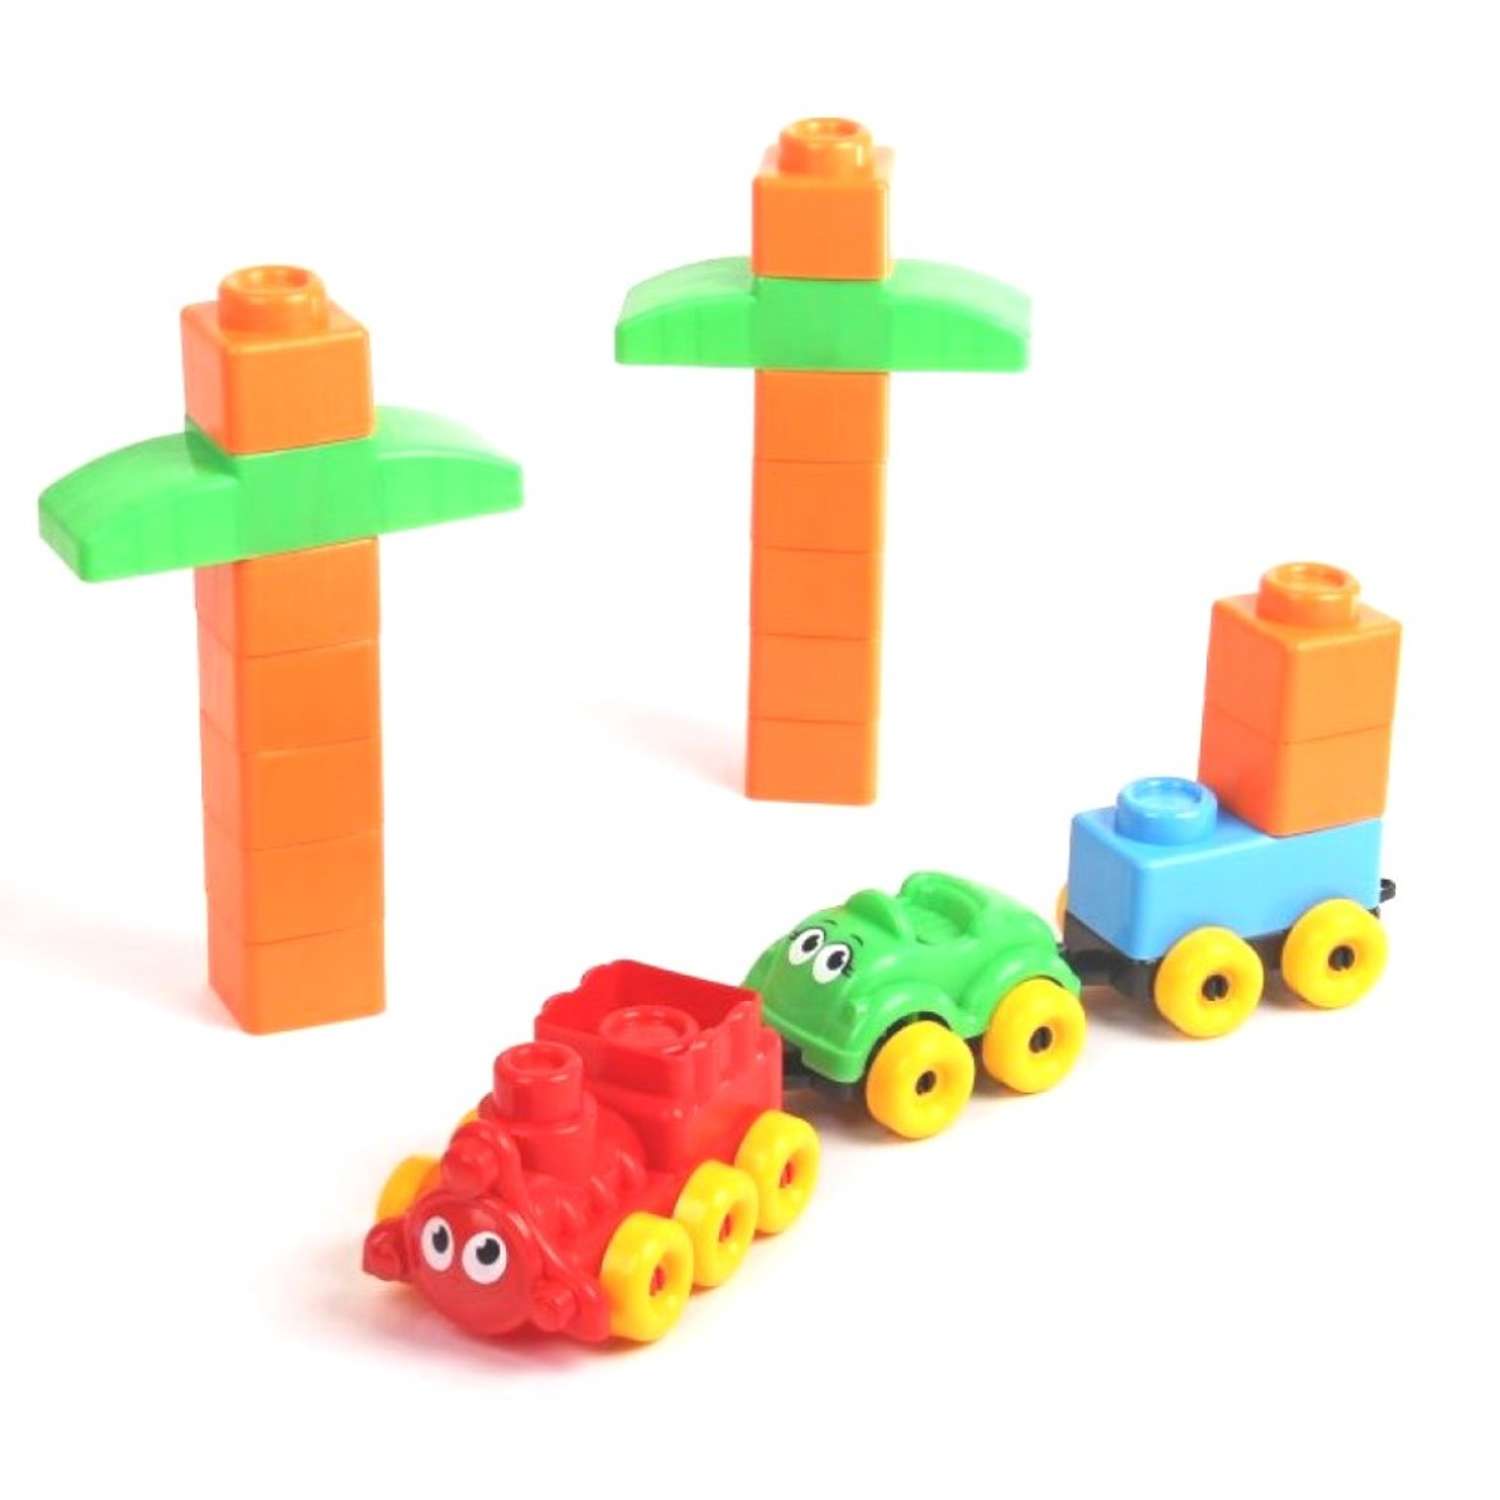 Развивающие игрушки БИПЛАНТ для малышей конструктор Кноп-Кнопыч 61 деталь + Сортер кубик малый + Команда КВА - фото 5